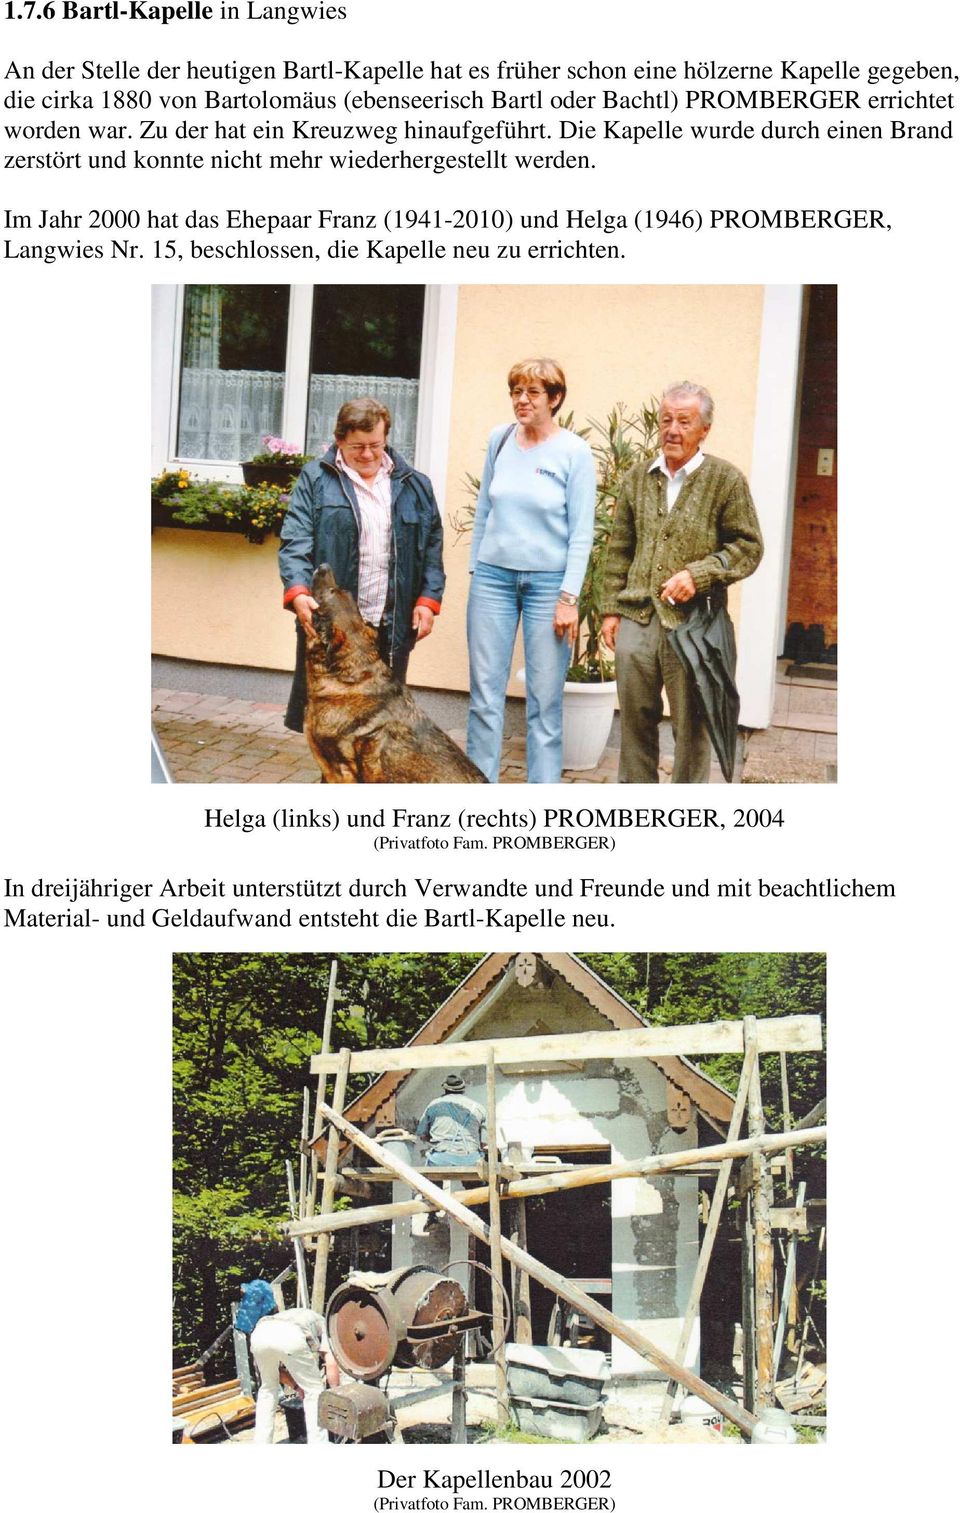 Im Jahr 2000 hat das Ehepaar Franz (1941-2010) und Helga (1946) PROMBERGER, Langwies Nr. 15, beschlossen, die Kapelle neu zu errichten.